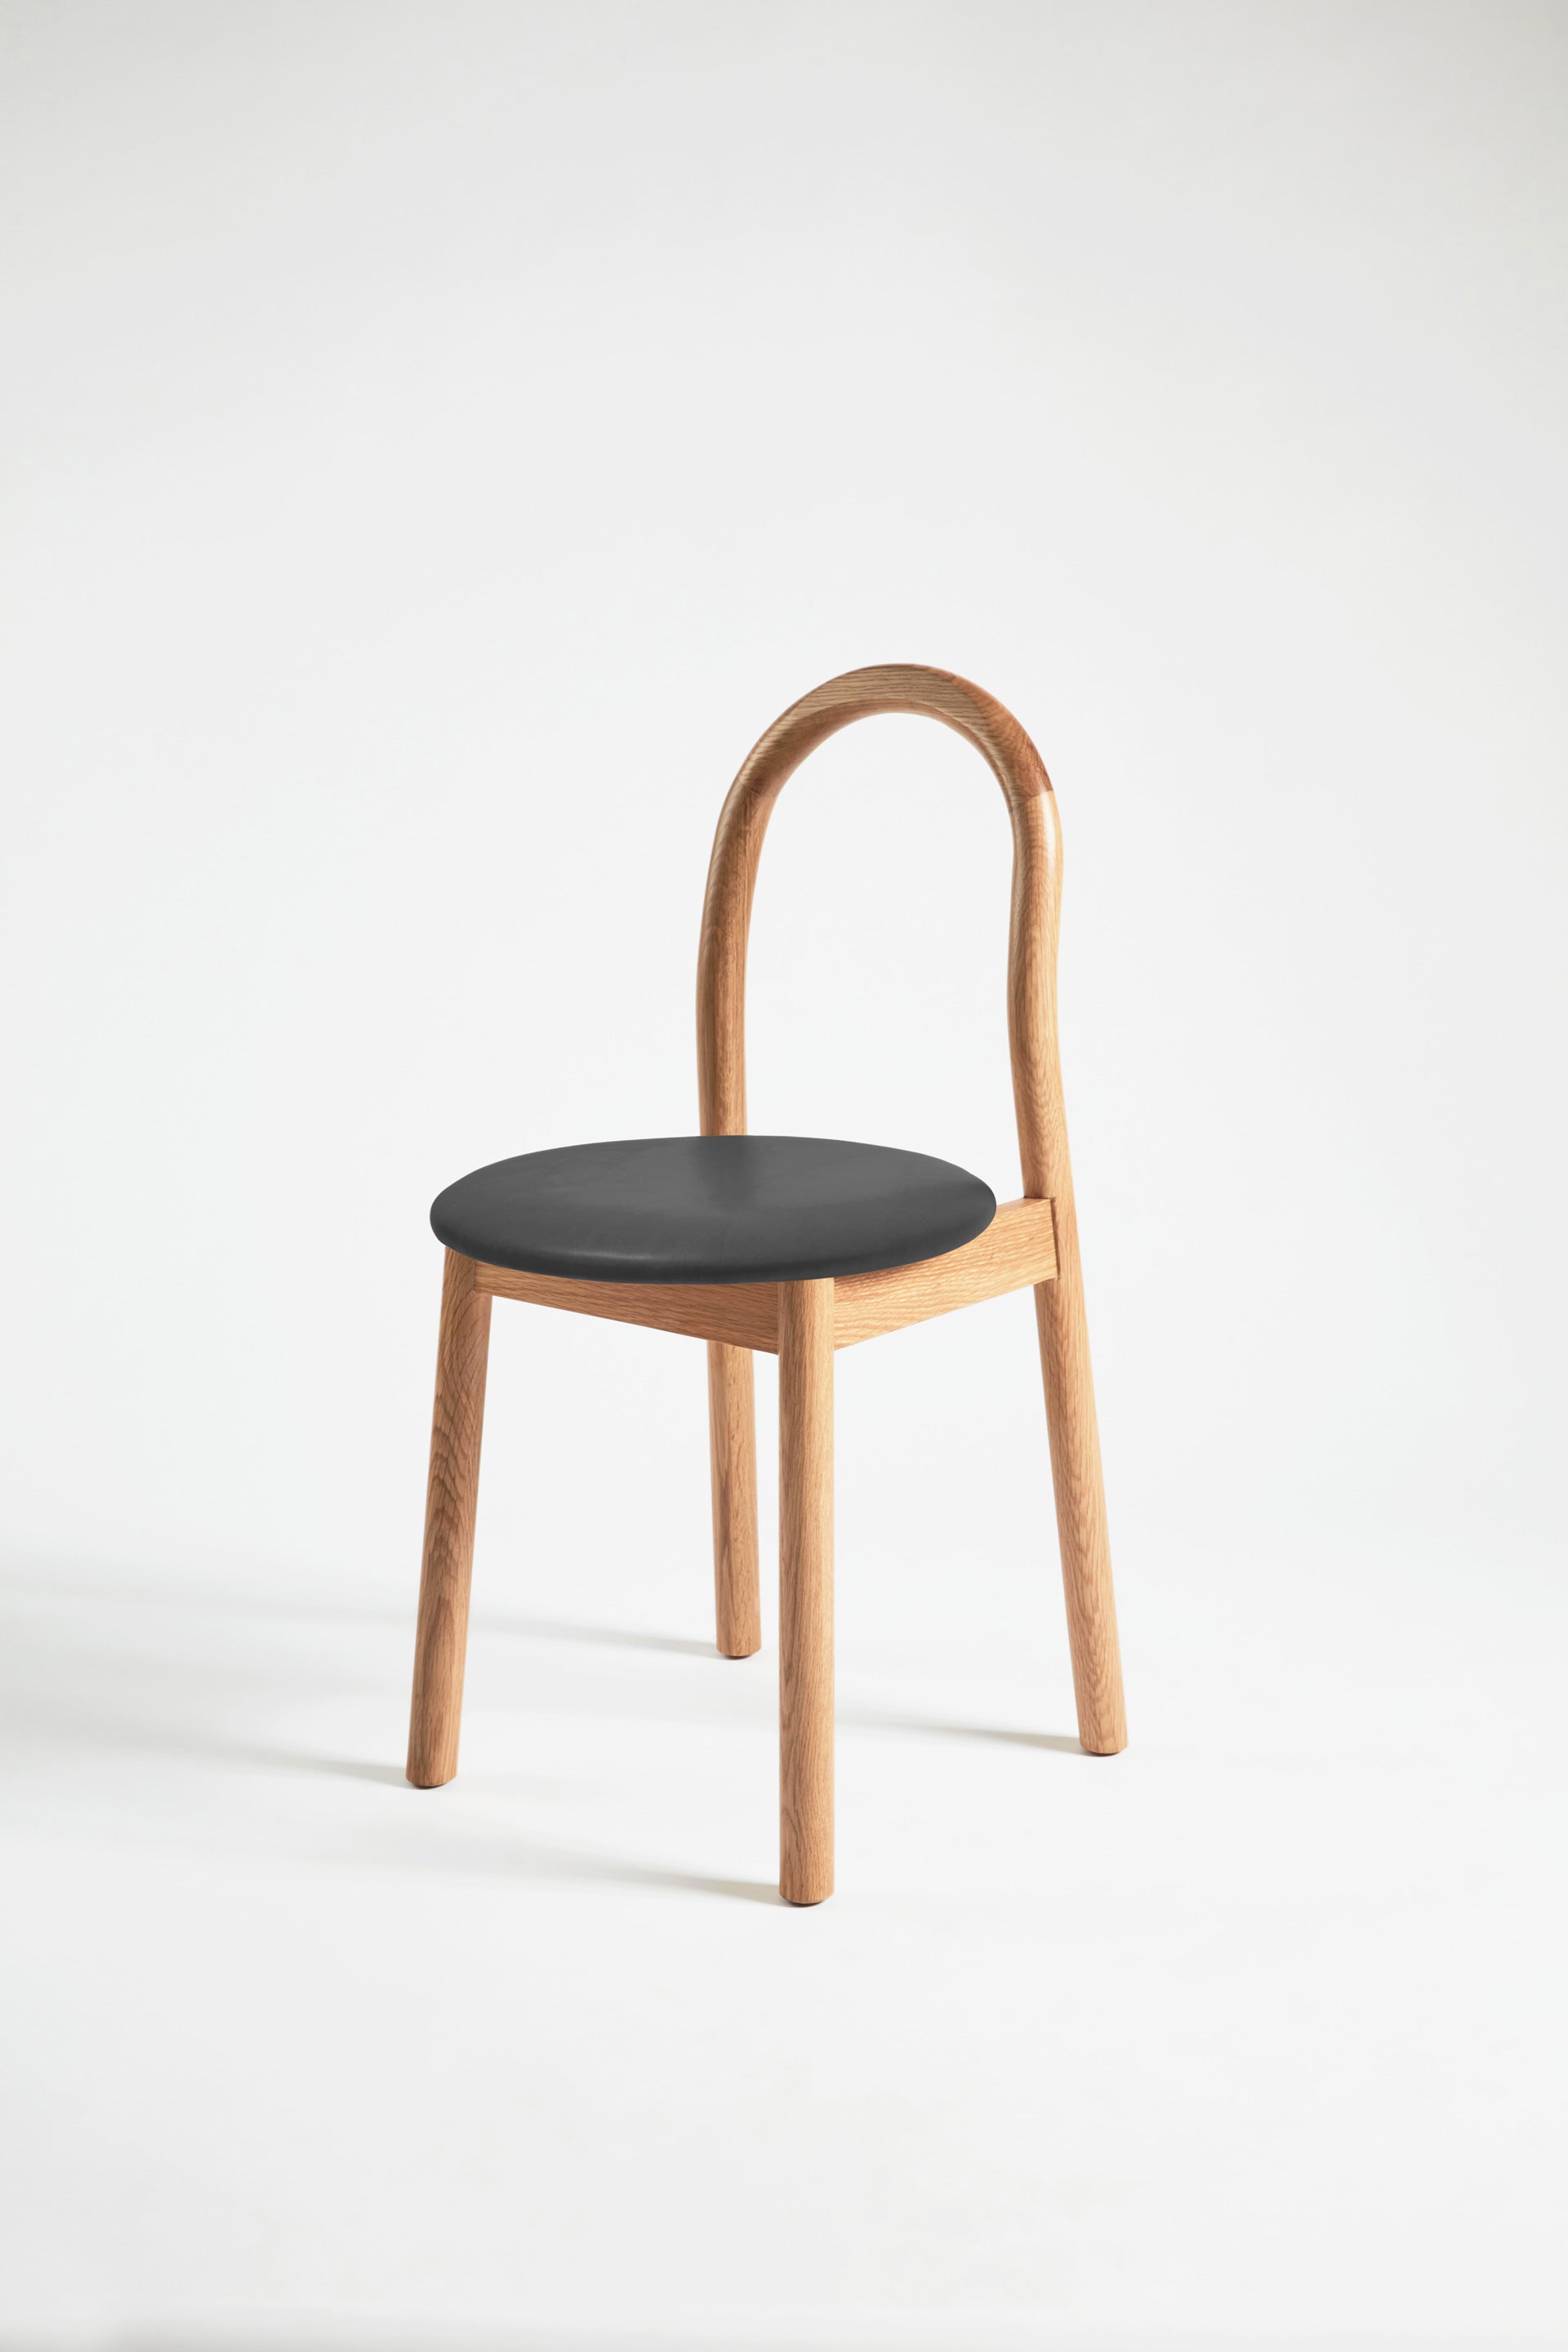 Bobby Chair Upholstered | Black Timber Wooden Dining Chair | Daniel Tucker | DesignByThem ** HF2 Lariat - 006 Black / Oak Solid